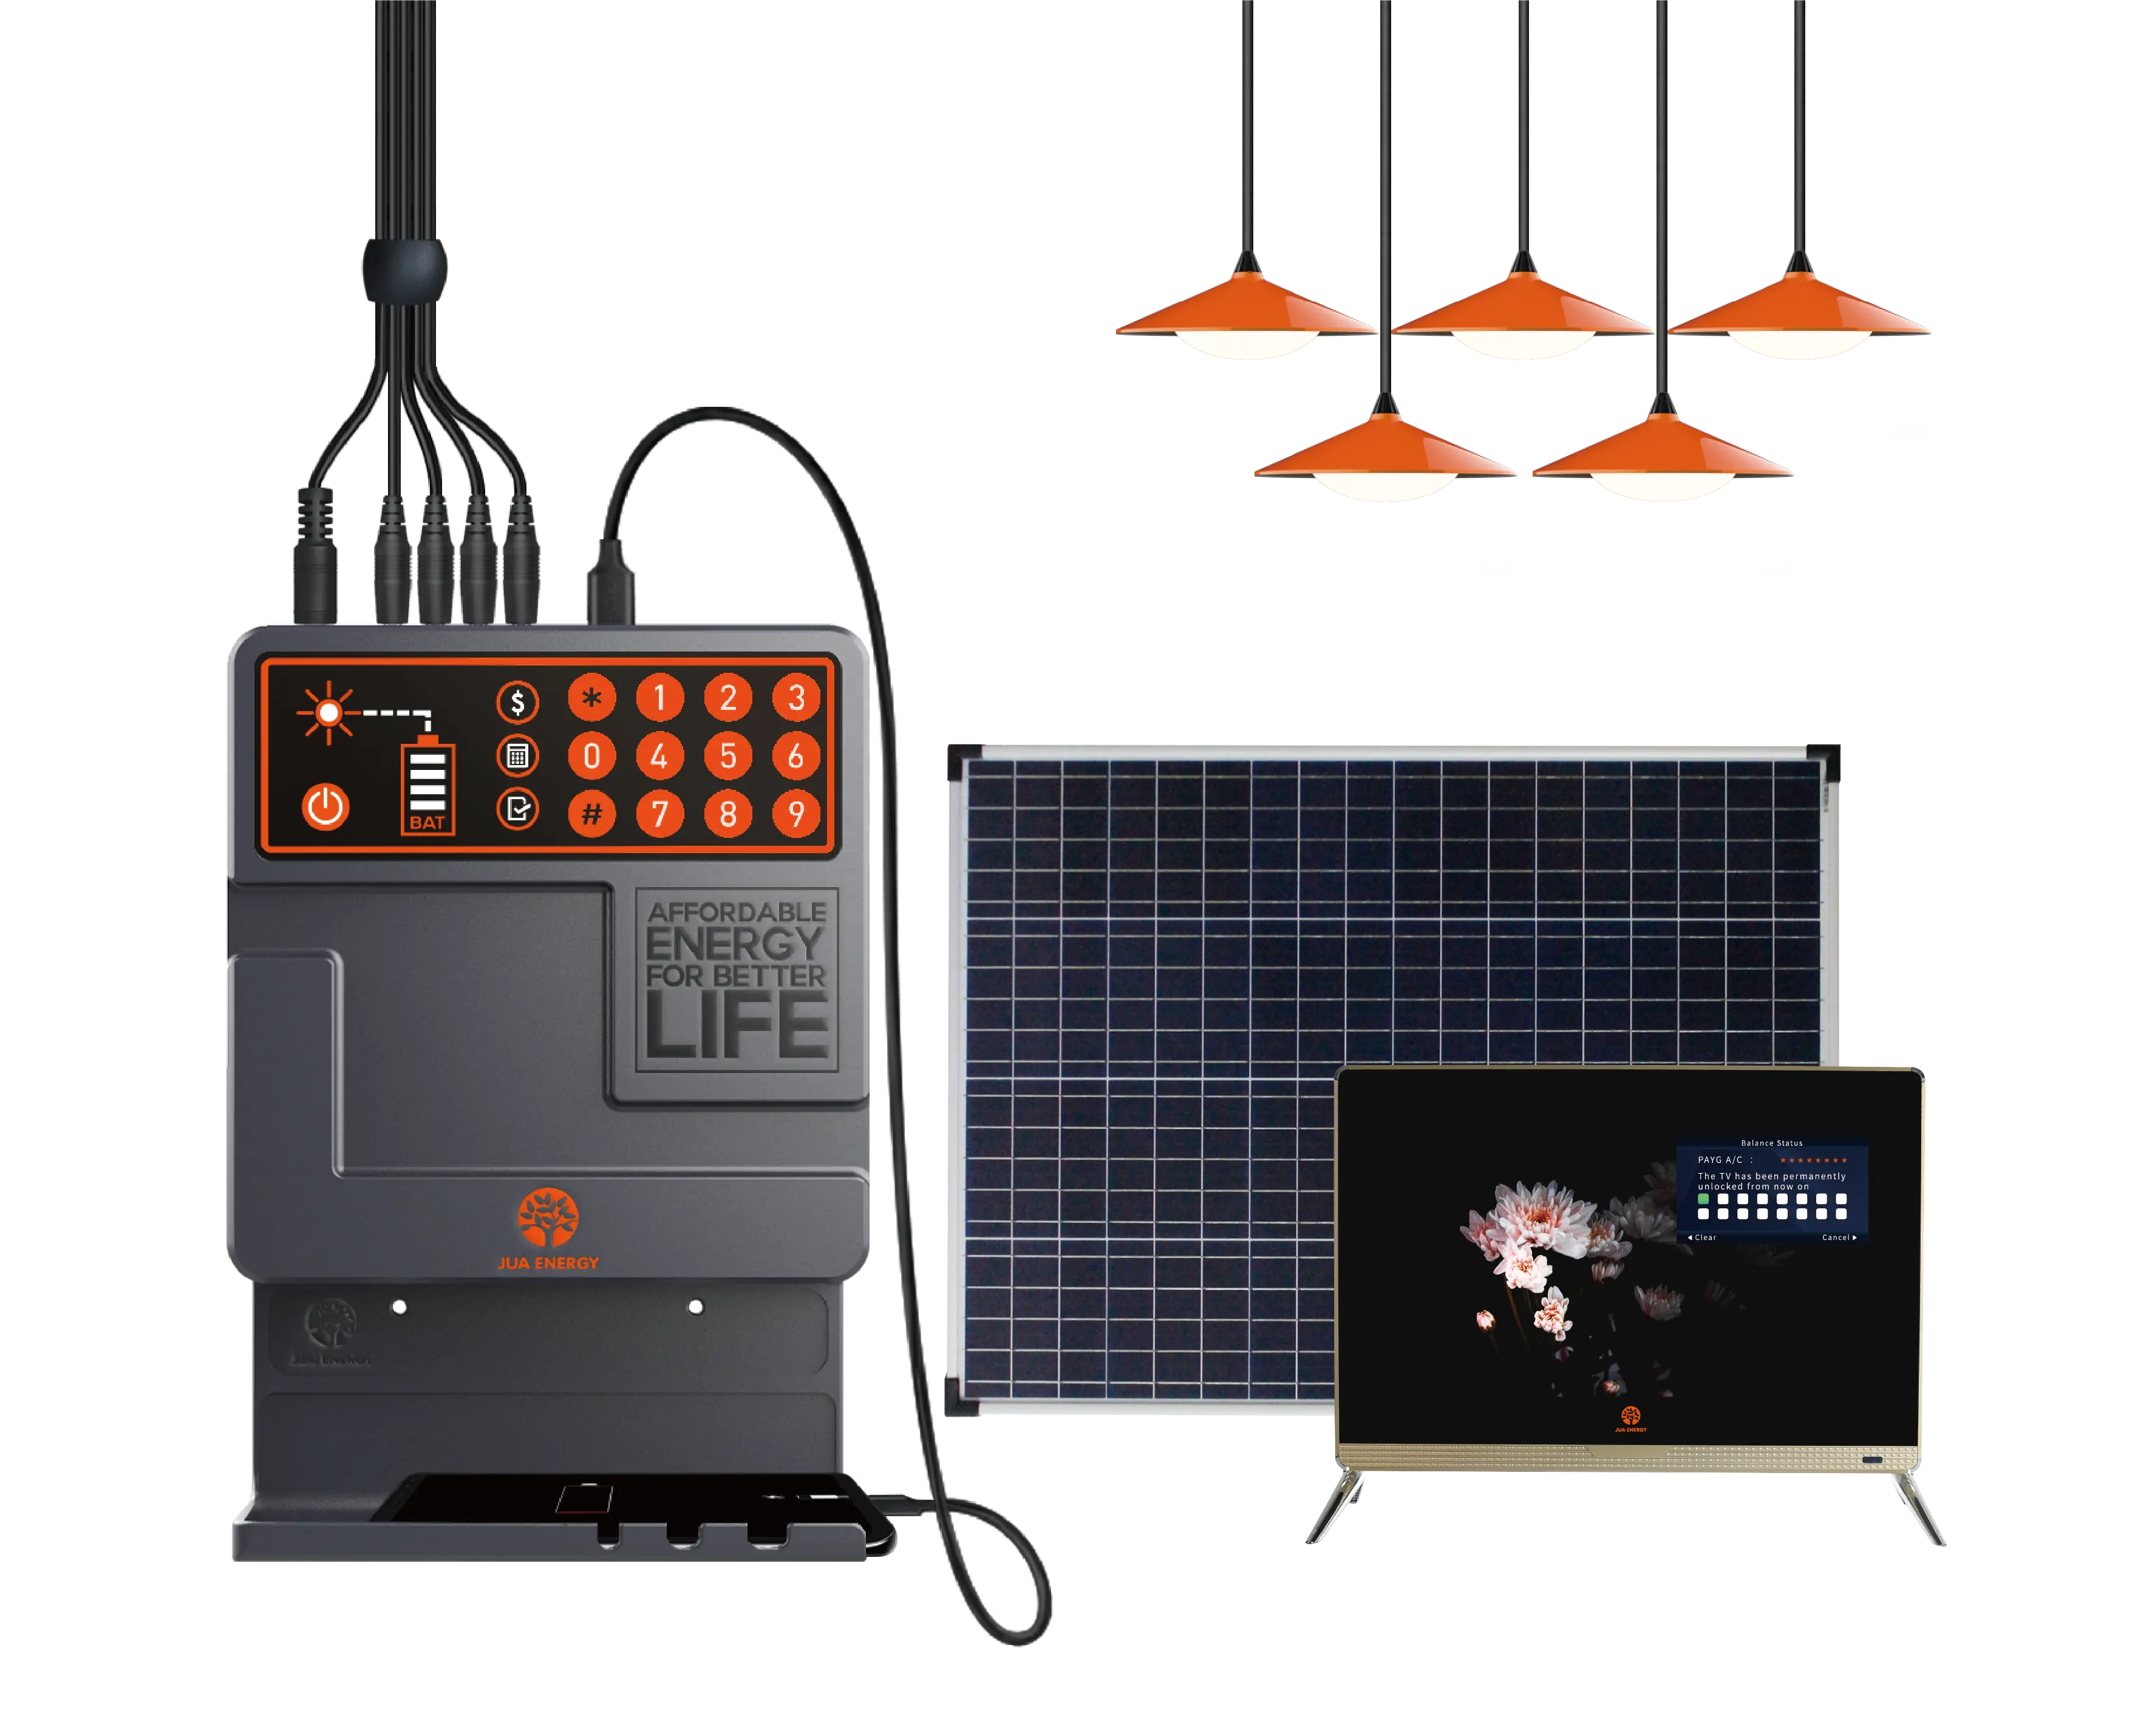 Jua energy 40w pagar como você vai iluminação solar kits de iluminação com tv dc para áfrica rural